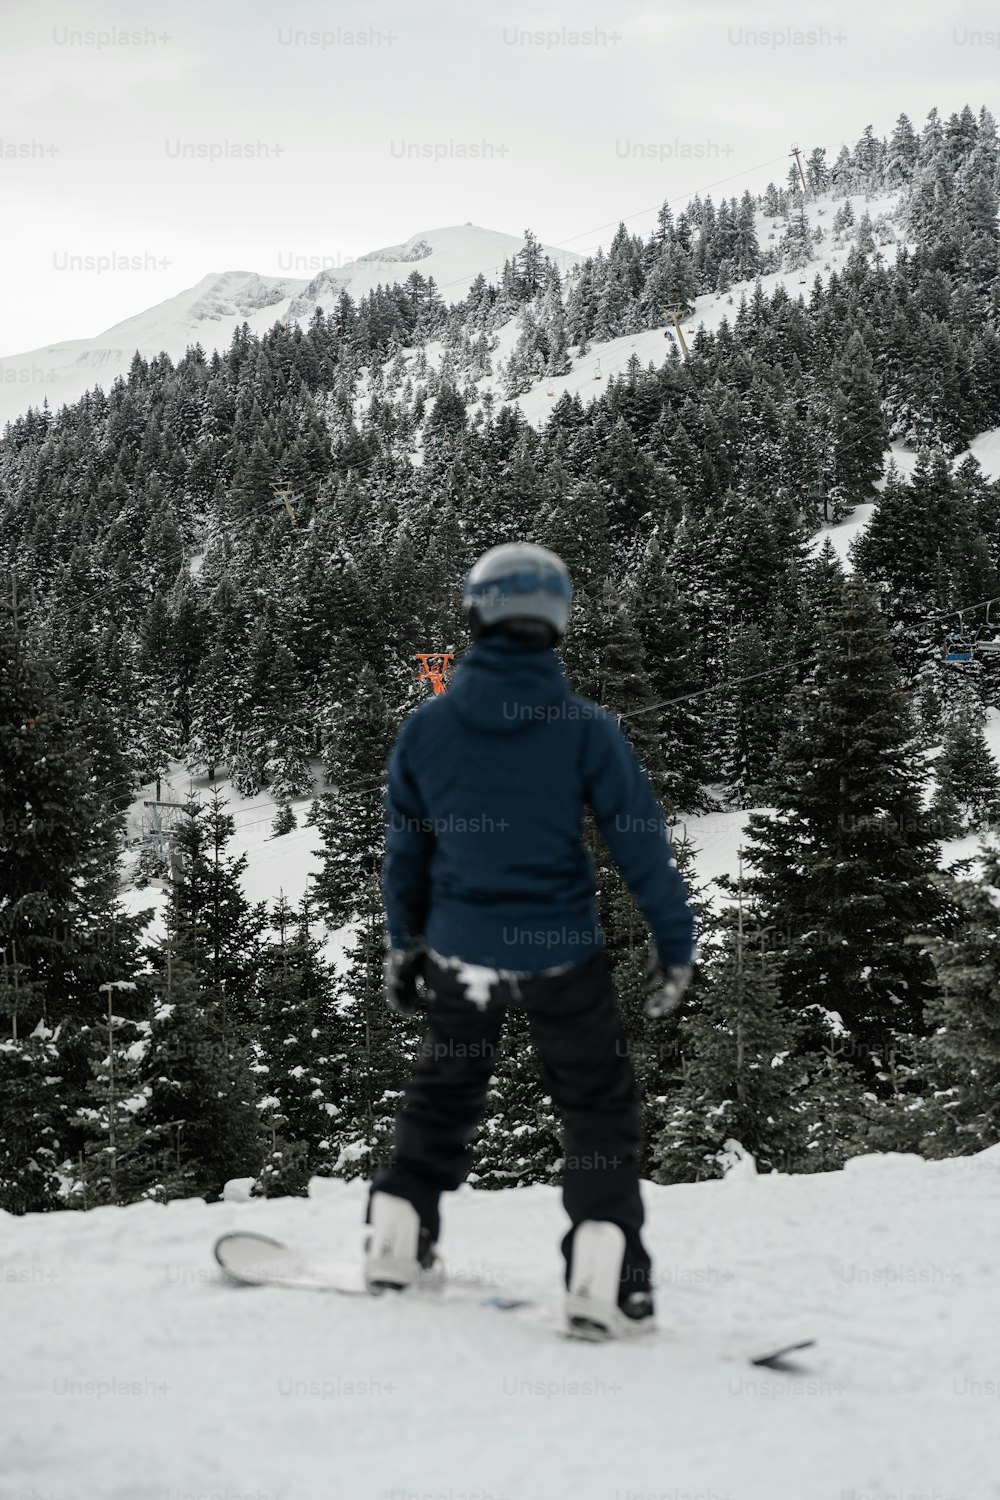 雪に覆われた斜面をスノーボードで駆け下りる人